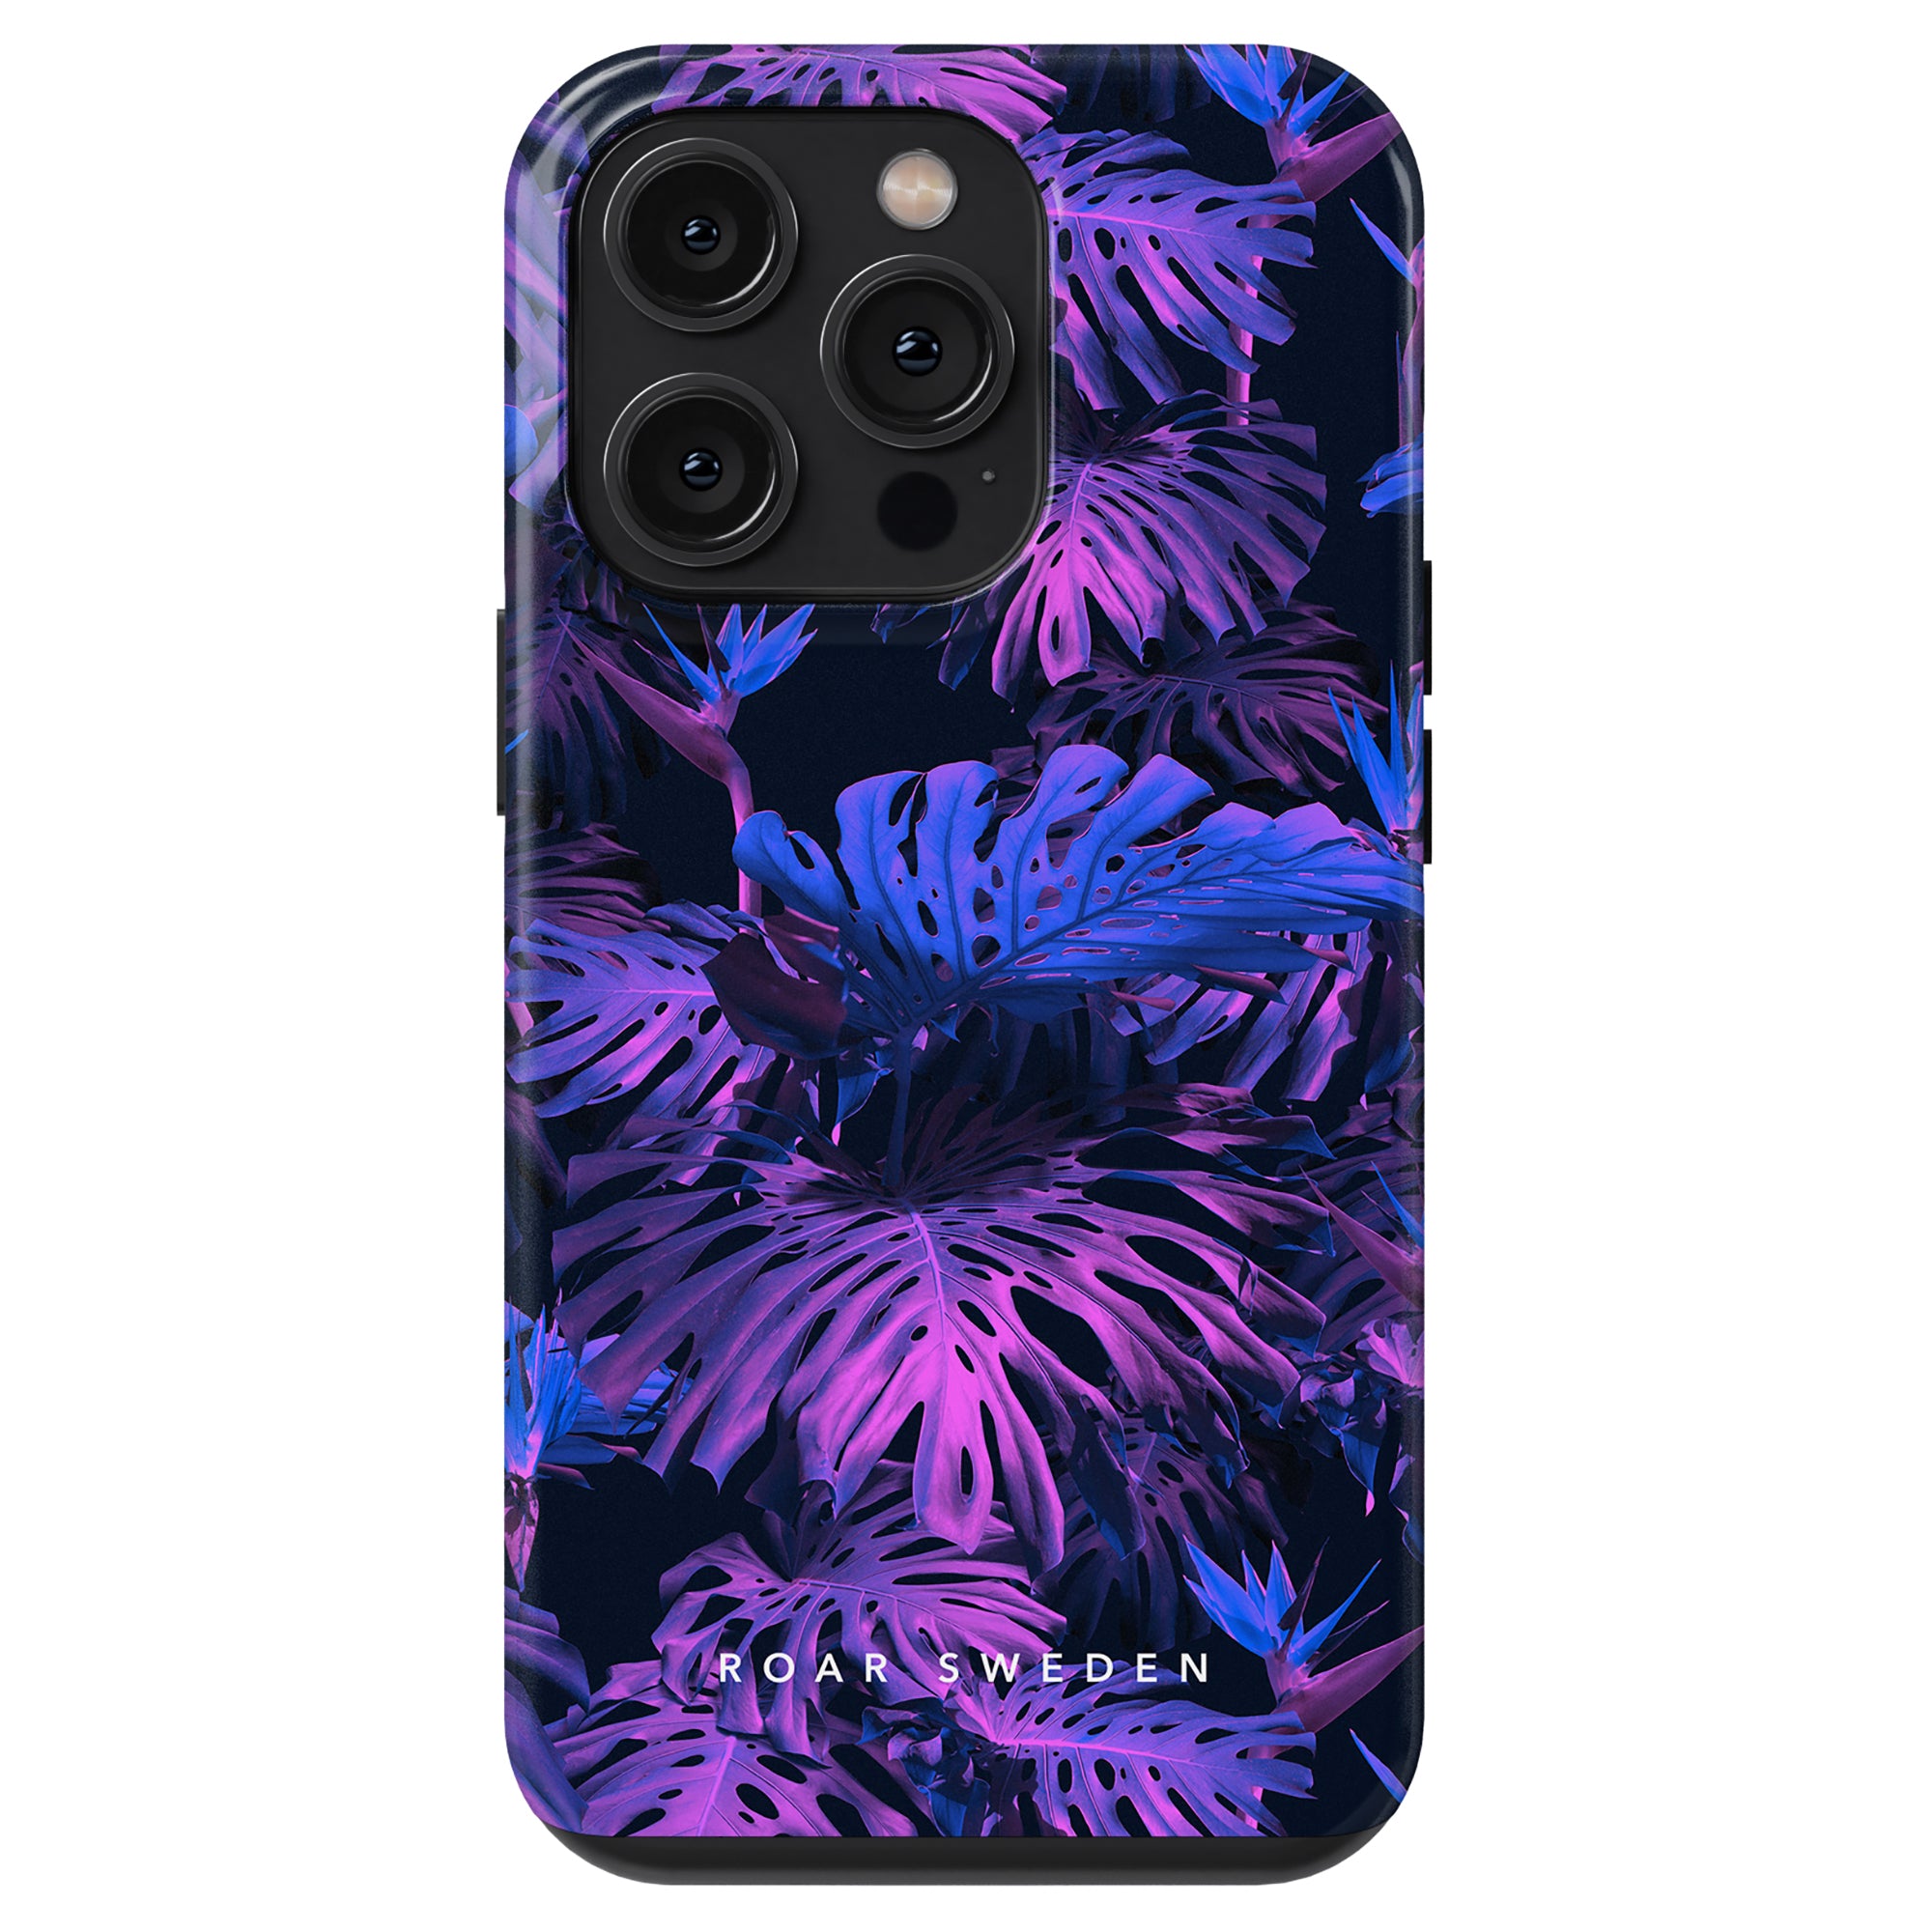 A neon Monstera Night - Tough Case, mobilskal, med tropiska löv i nyanser av lila och blått.